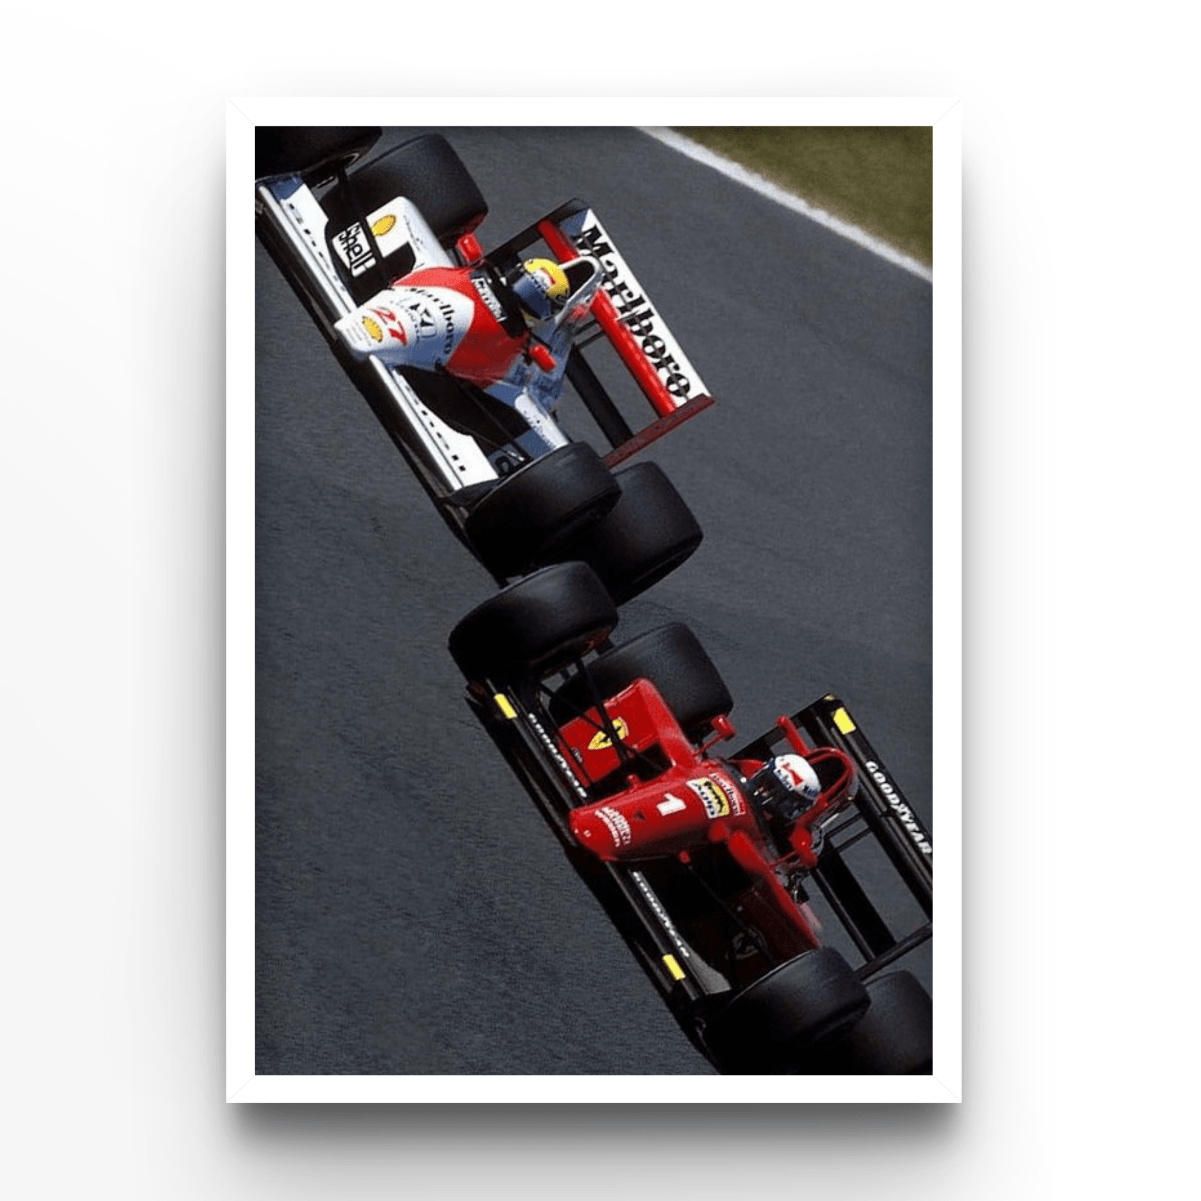 Prost VS Senna - A4, A3, A2 Posters Base - Poster Print Shop / Art Prints / PostersBase